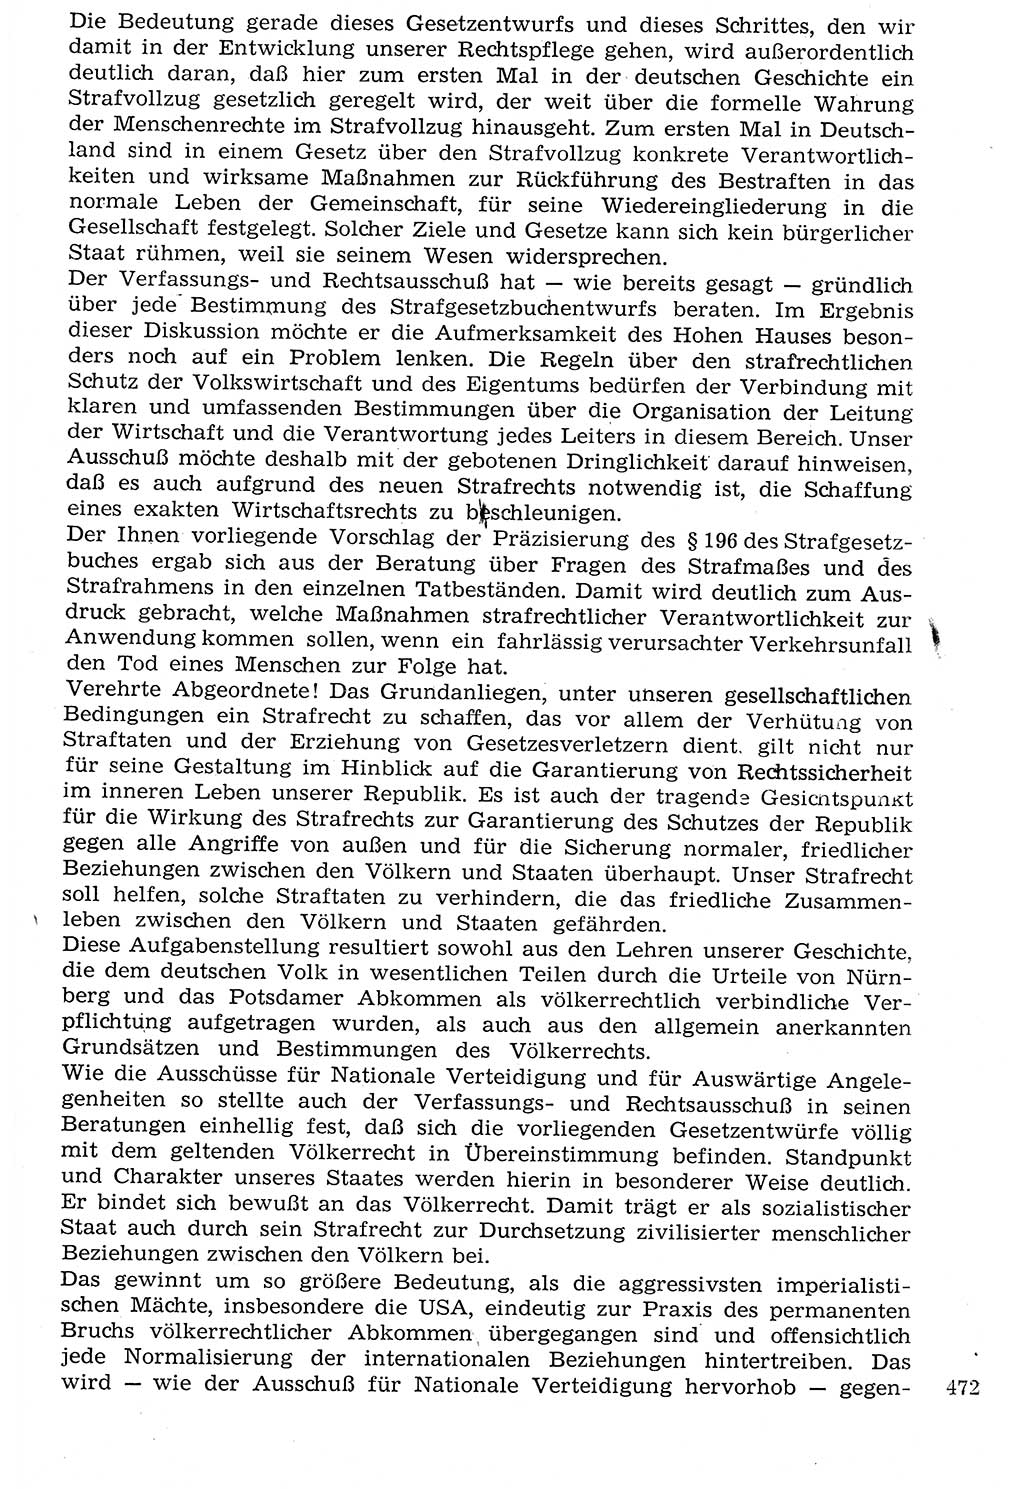 Staat und Recht (StuR), 17. Jahrgang [Deutsche Demokratische Republik (DDR)] 1968, Seite 472 (StuR DDR 1968, S. 472)